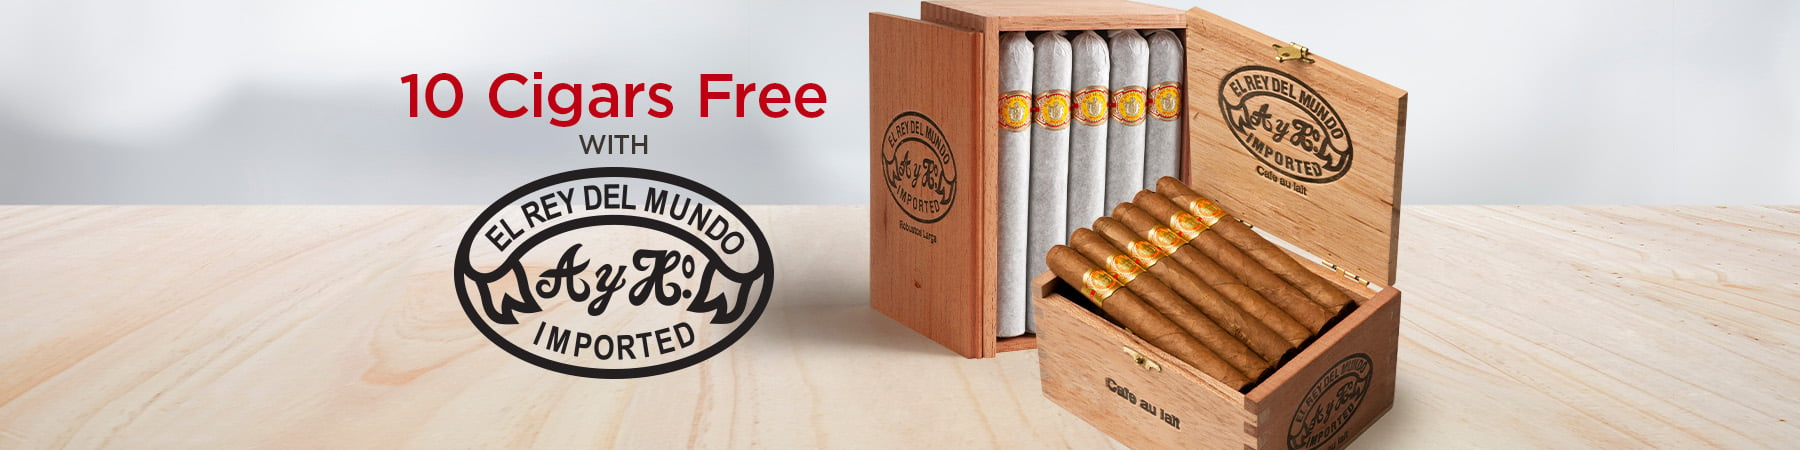 10 Cigars Free with El Rey del Mundo